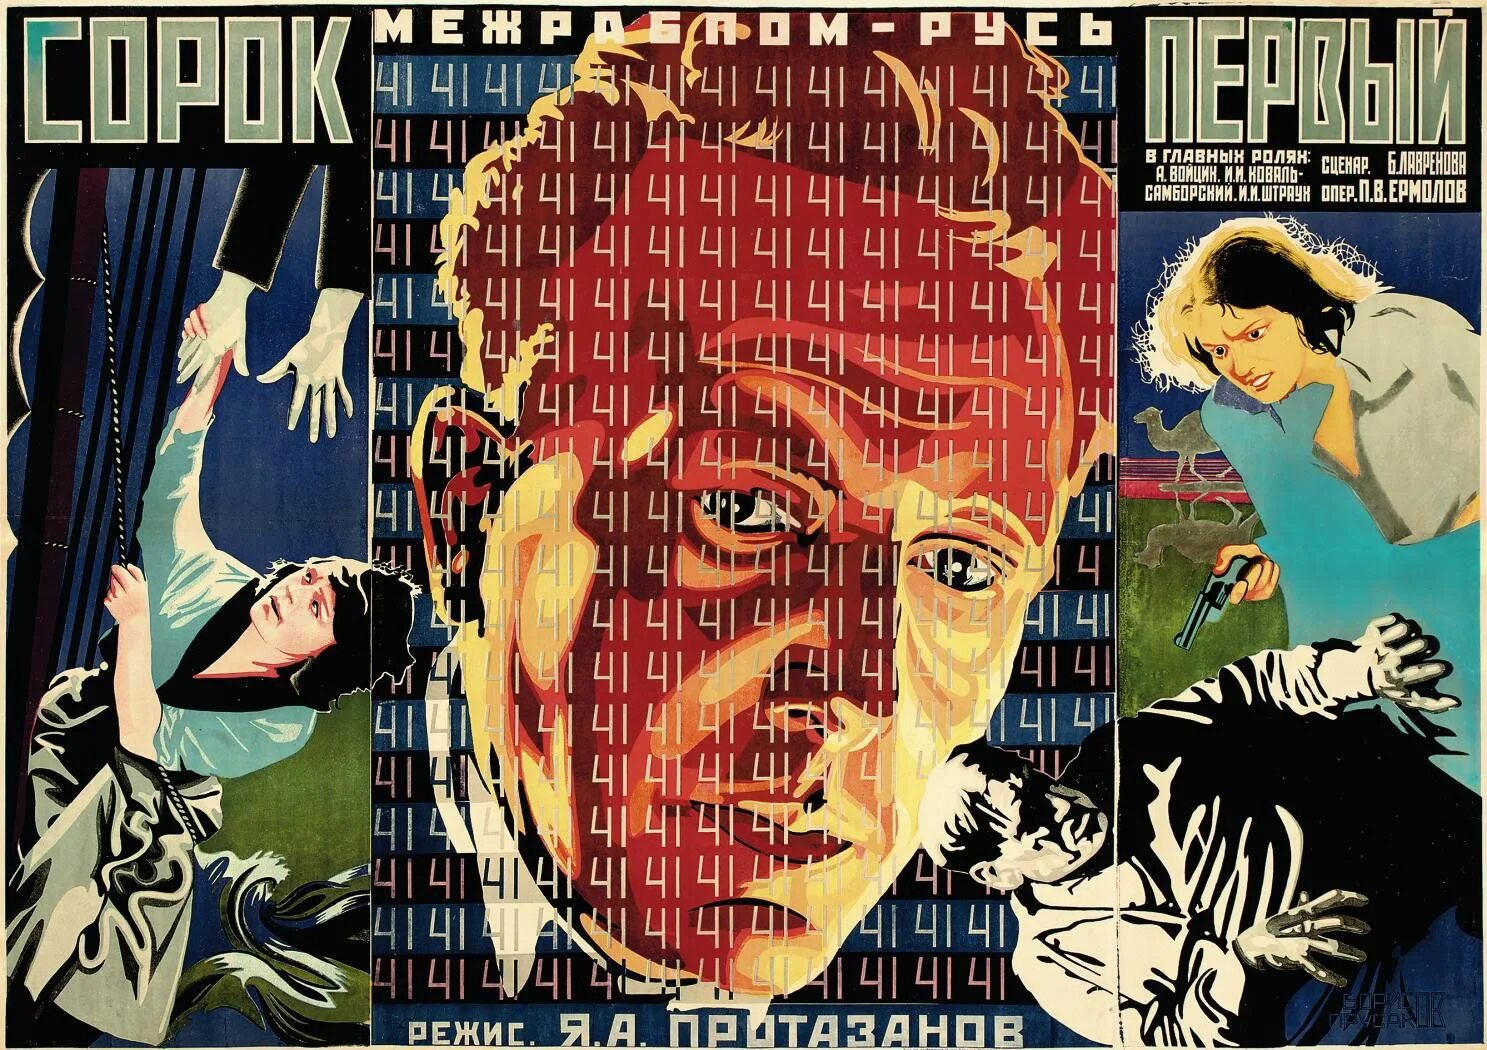 Плакат Советский авангардизм. Советский киноплакат. Советские авангардные постеры. Советские киноплакаты 20 годов.